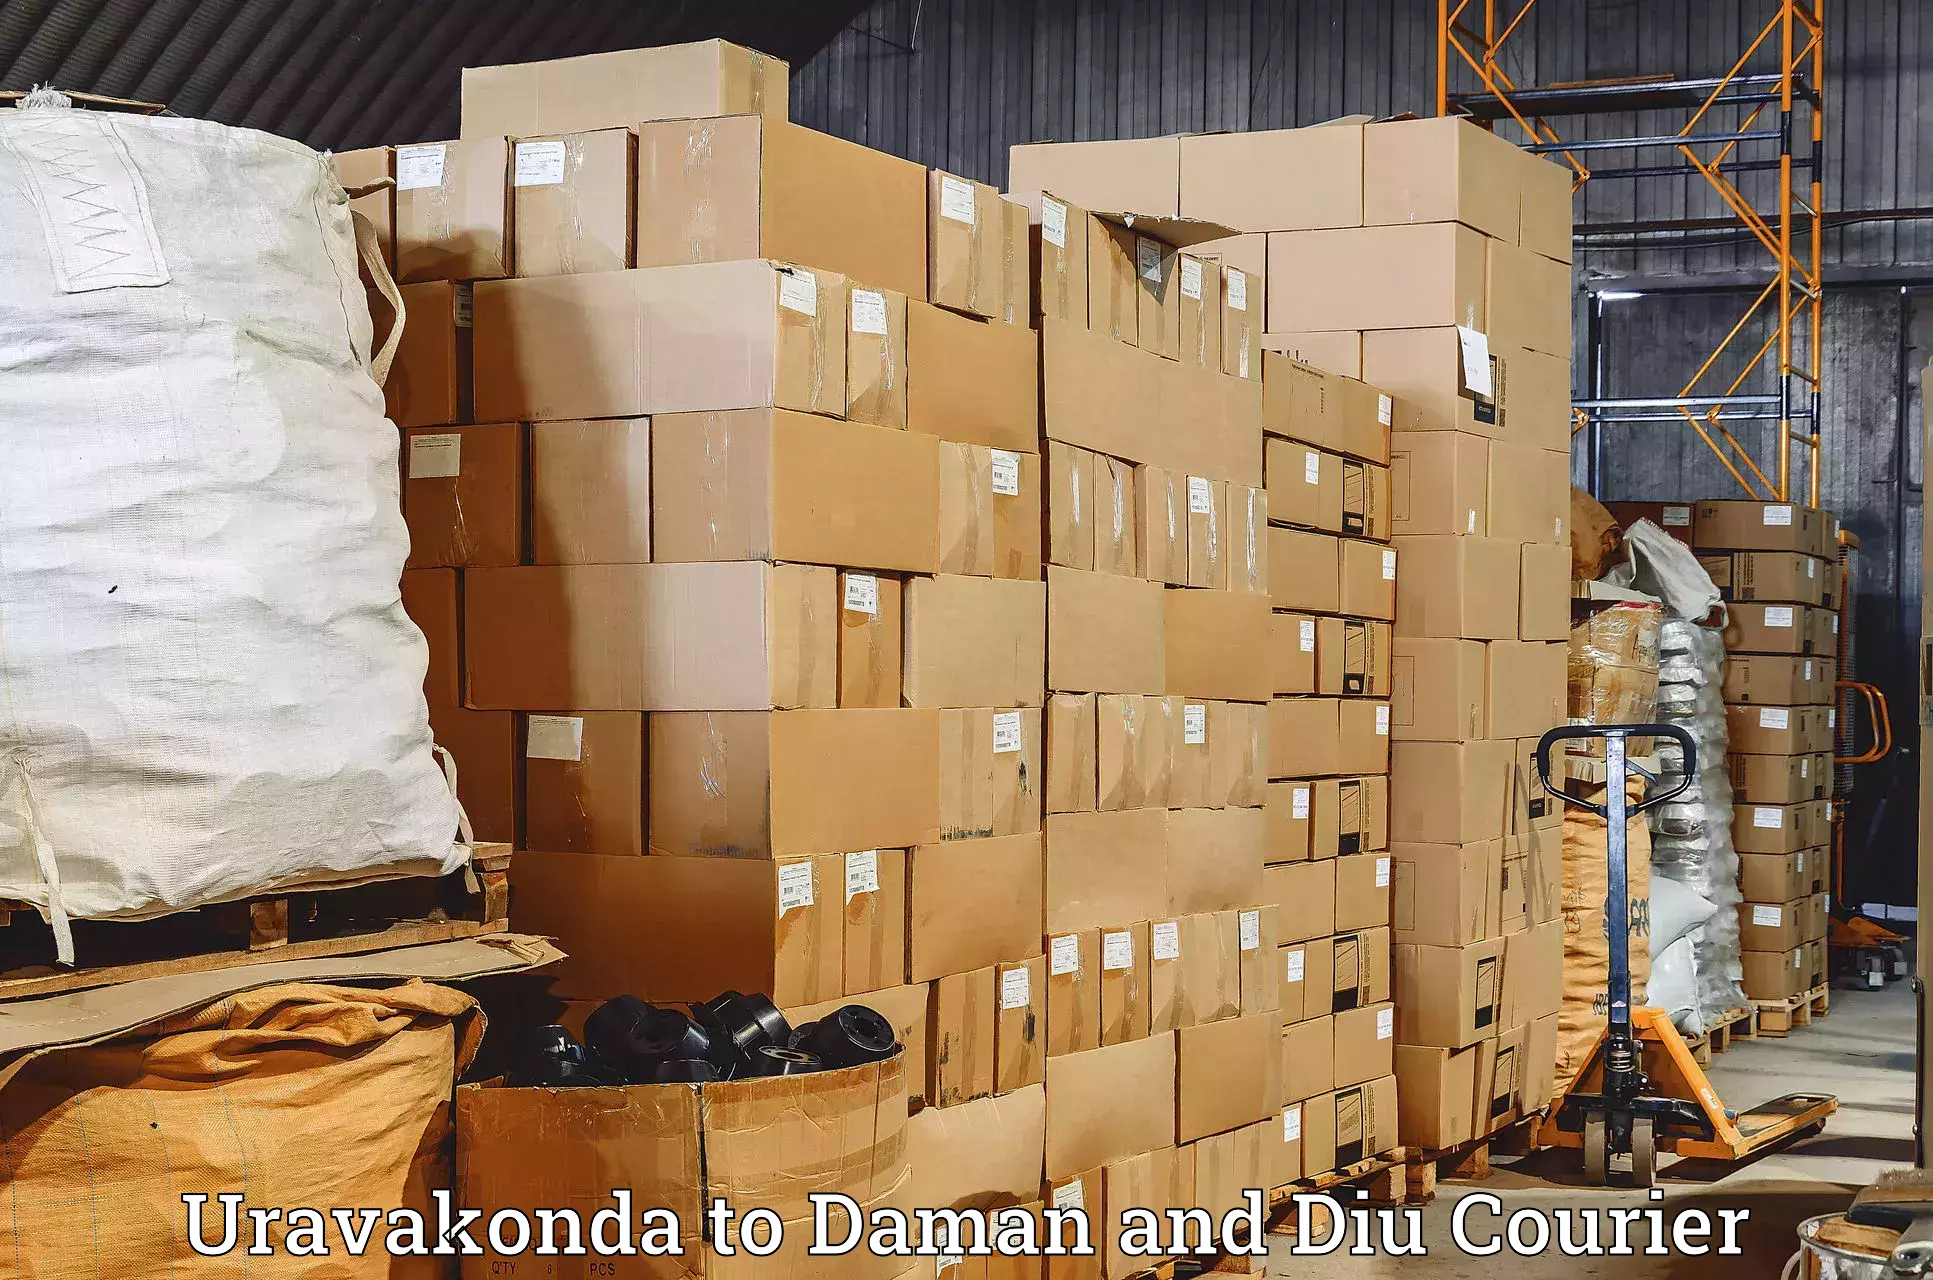 Express courier capabilities Uravakonda to Daman and Diu